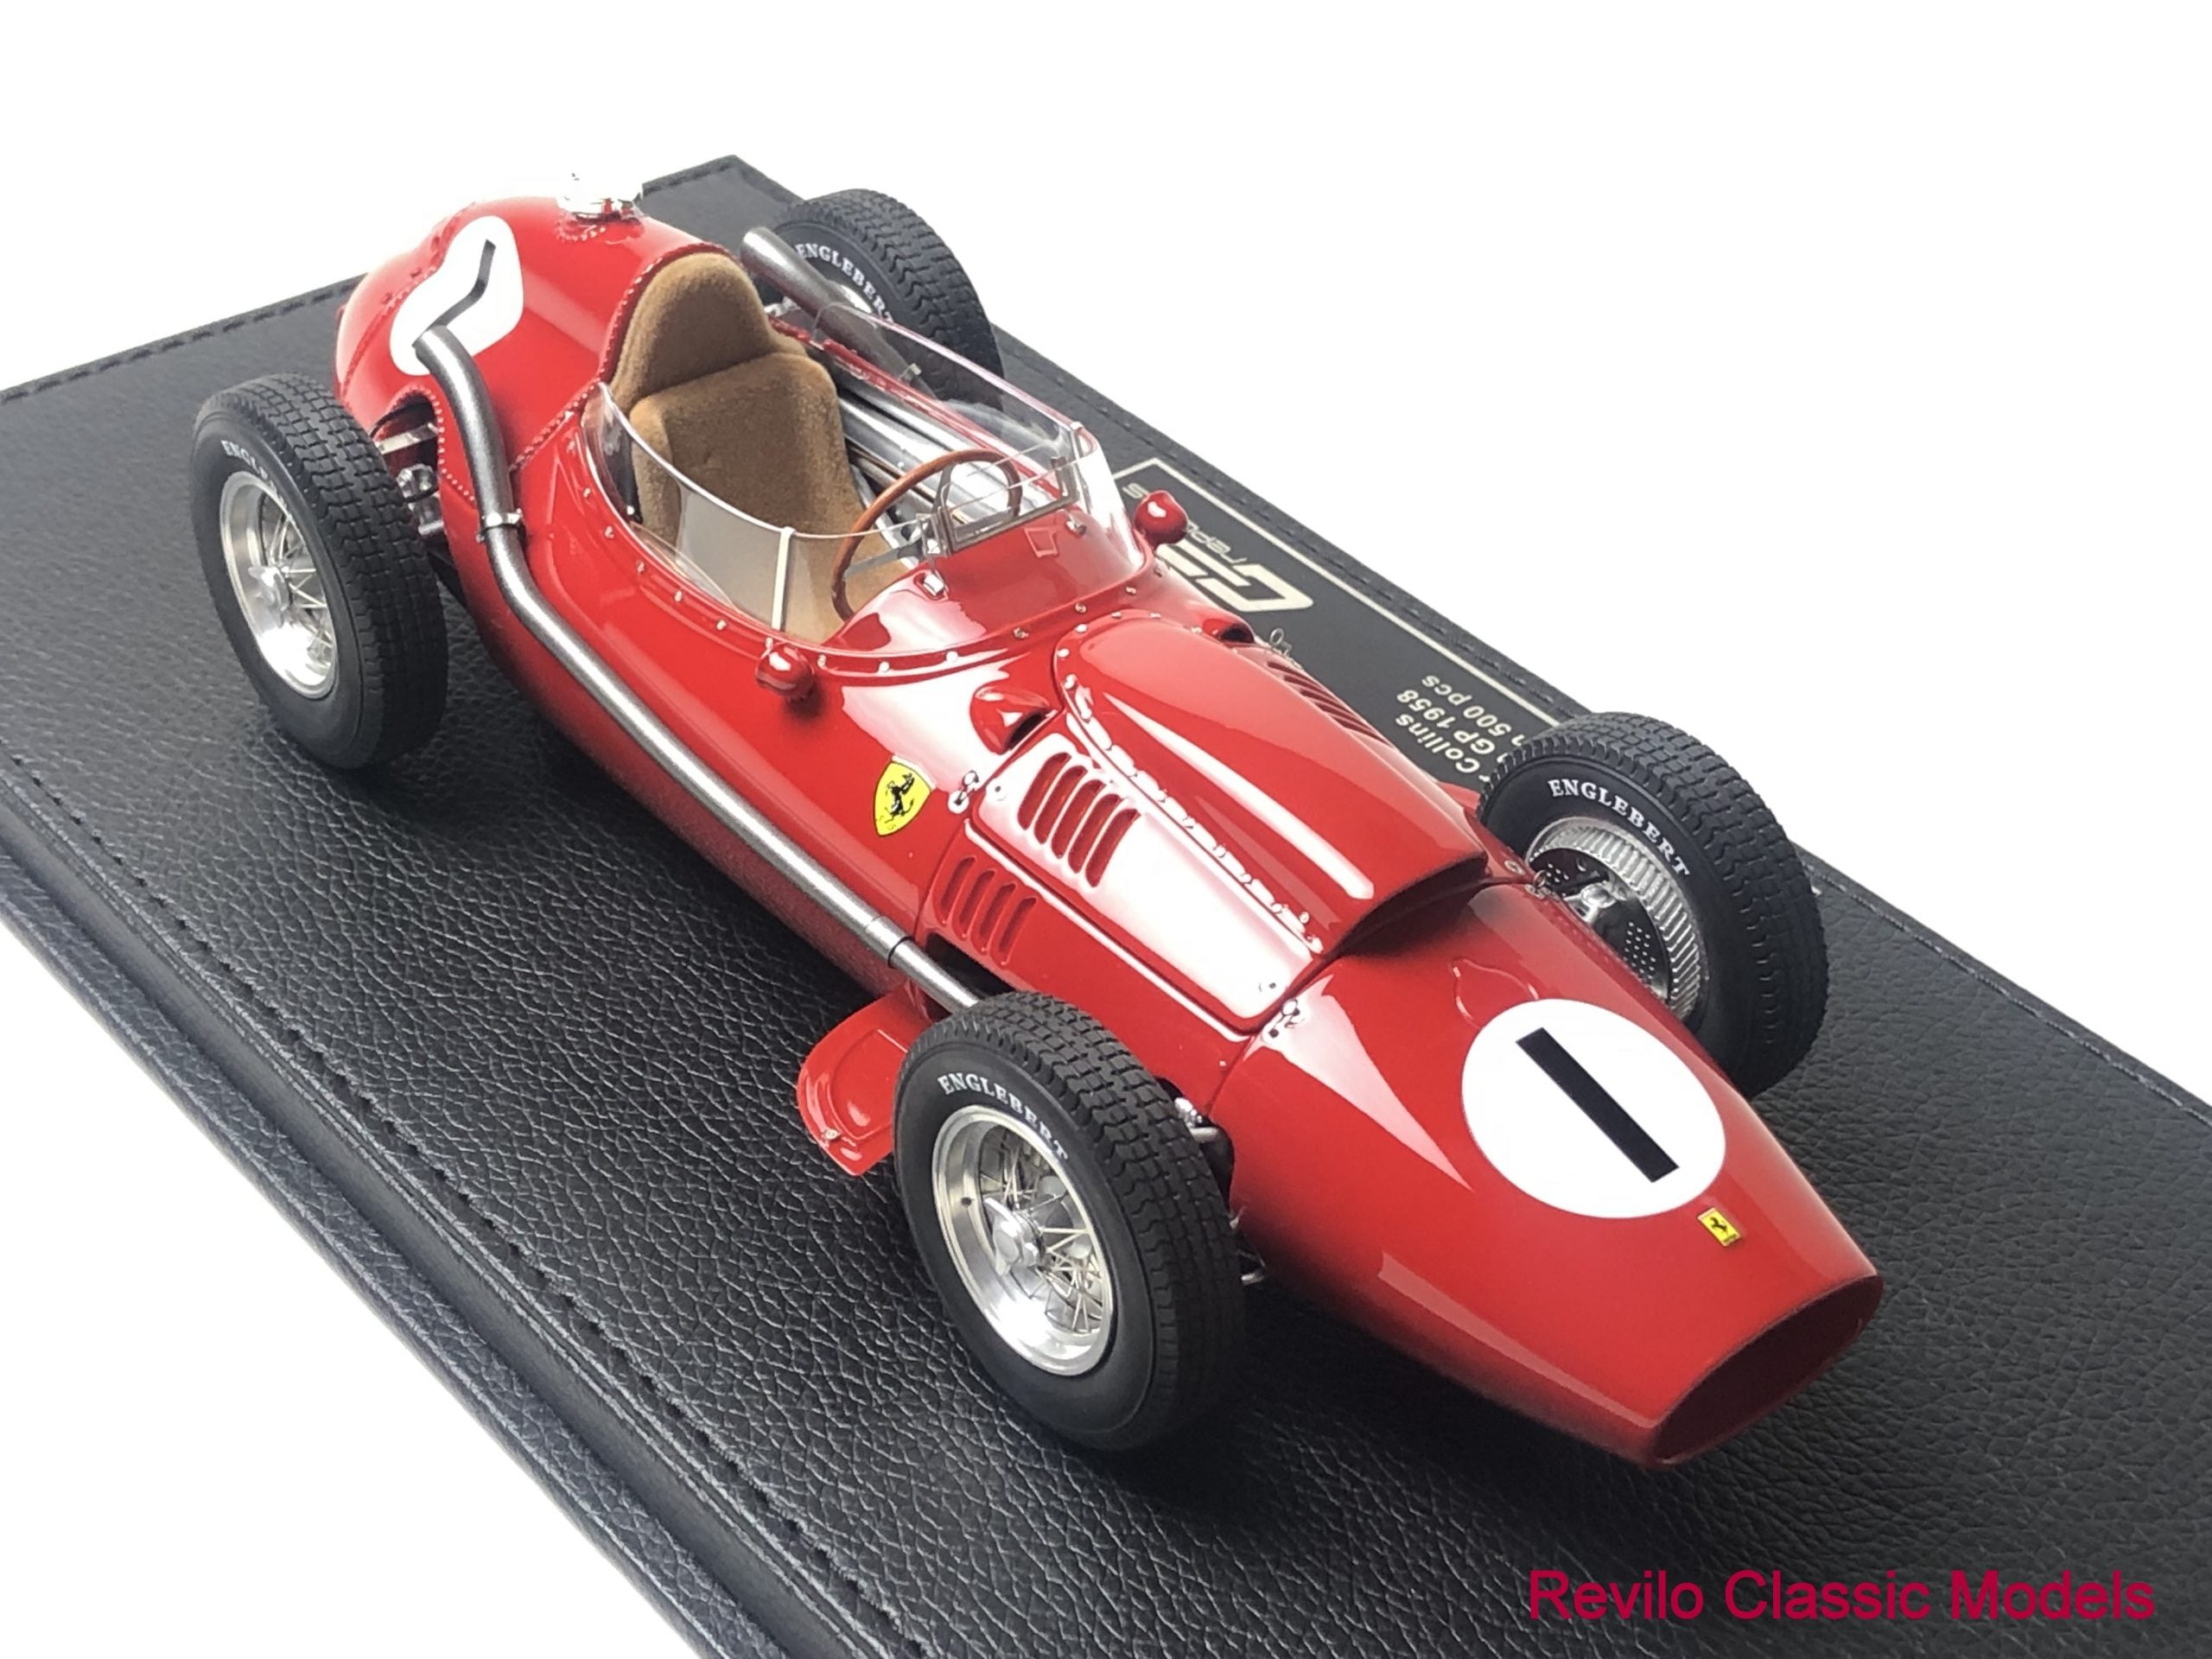 1958 Ferrari 246 Dino F1 Peter Collins #1 1:18 scale